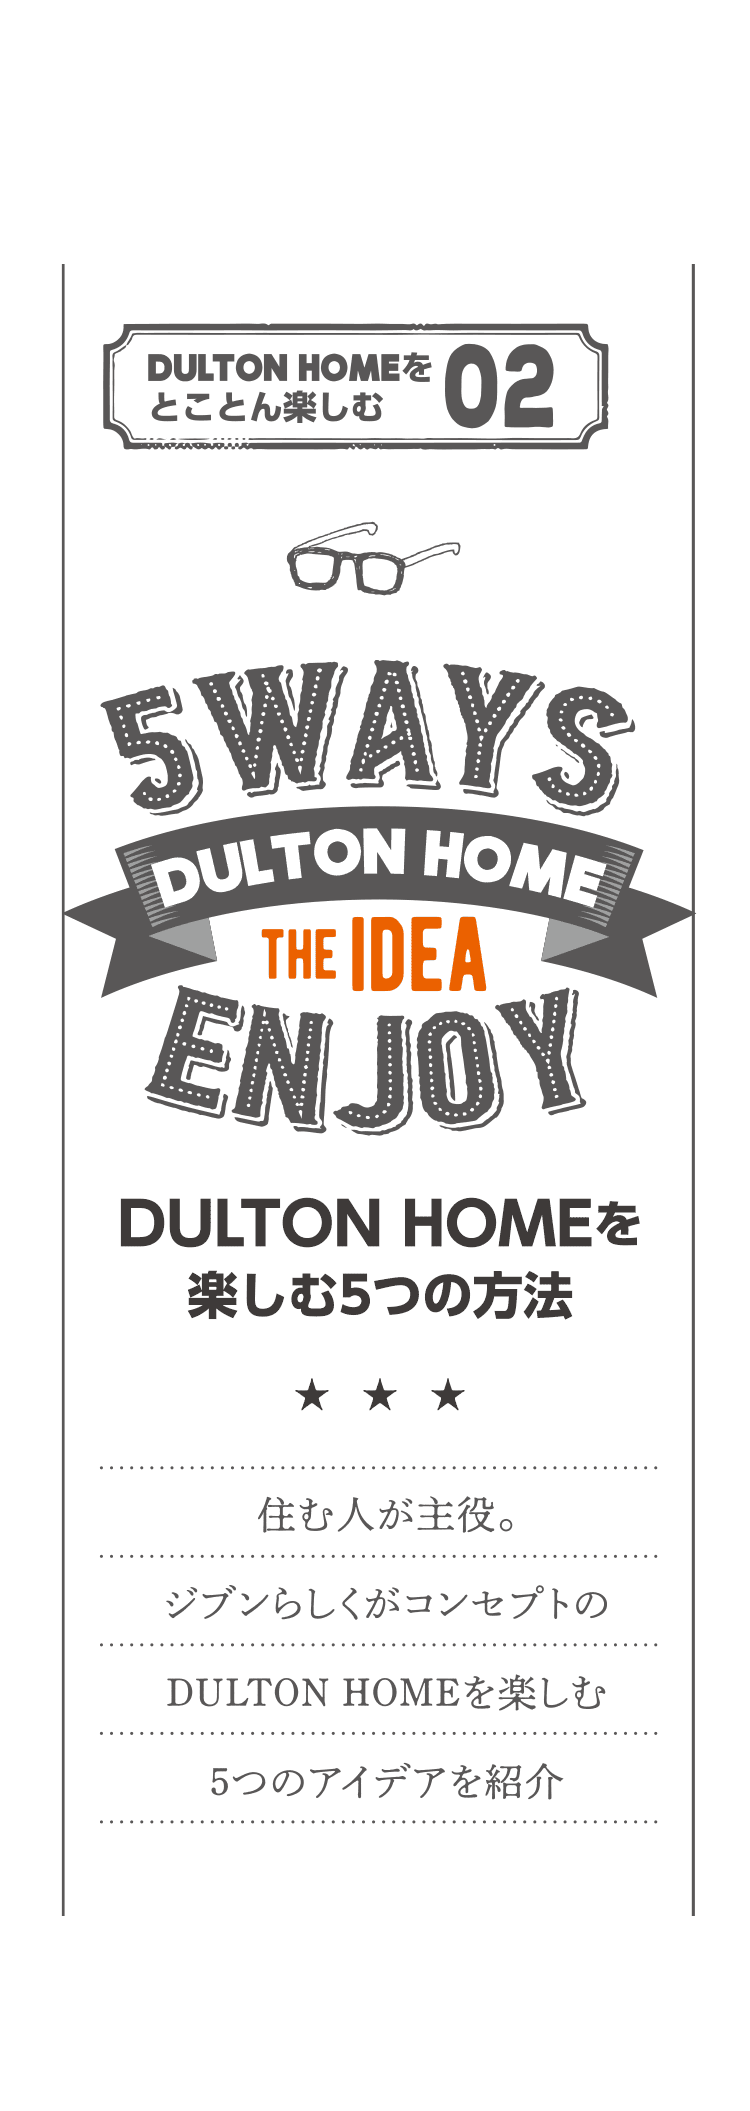 DULTON HOMEをとことん楽しむ